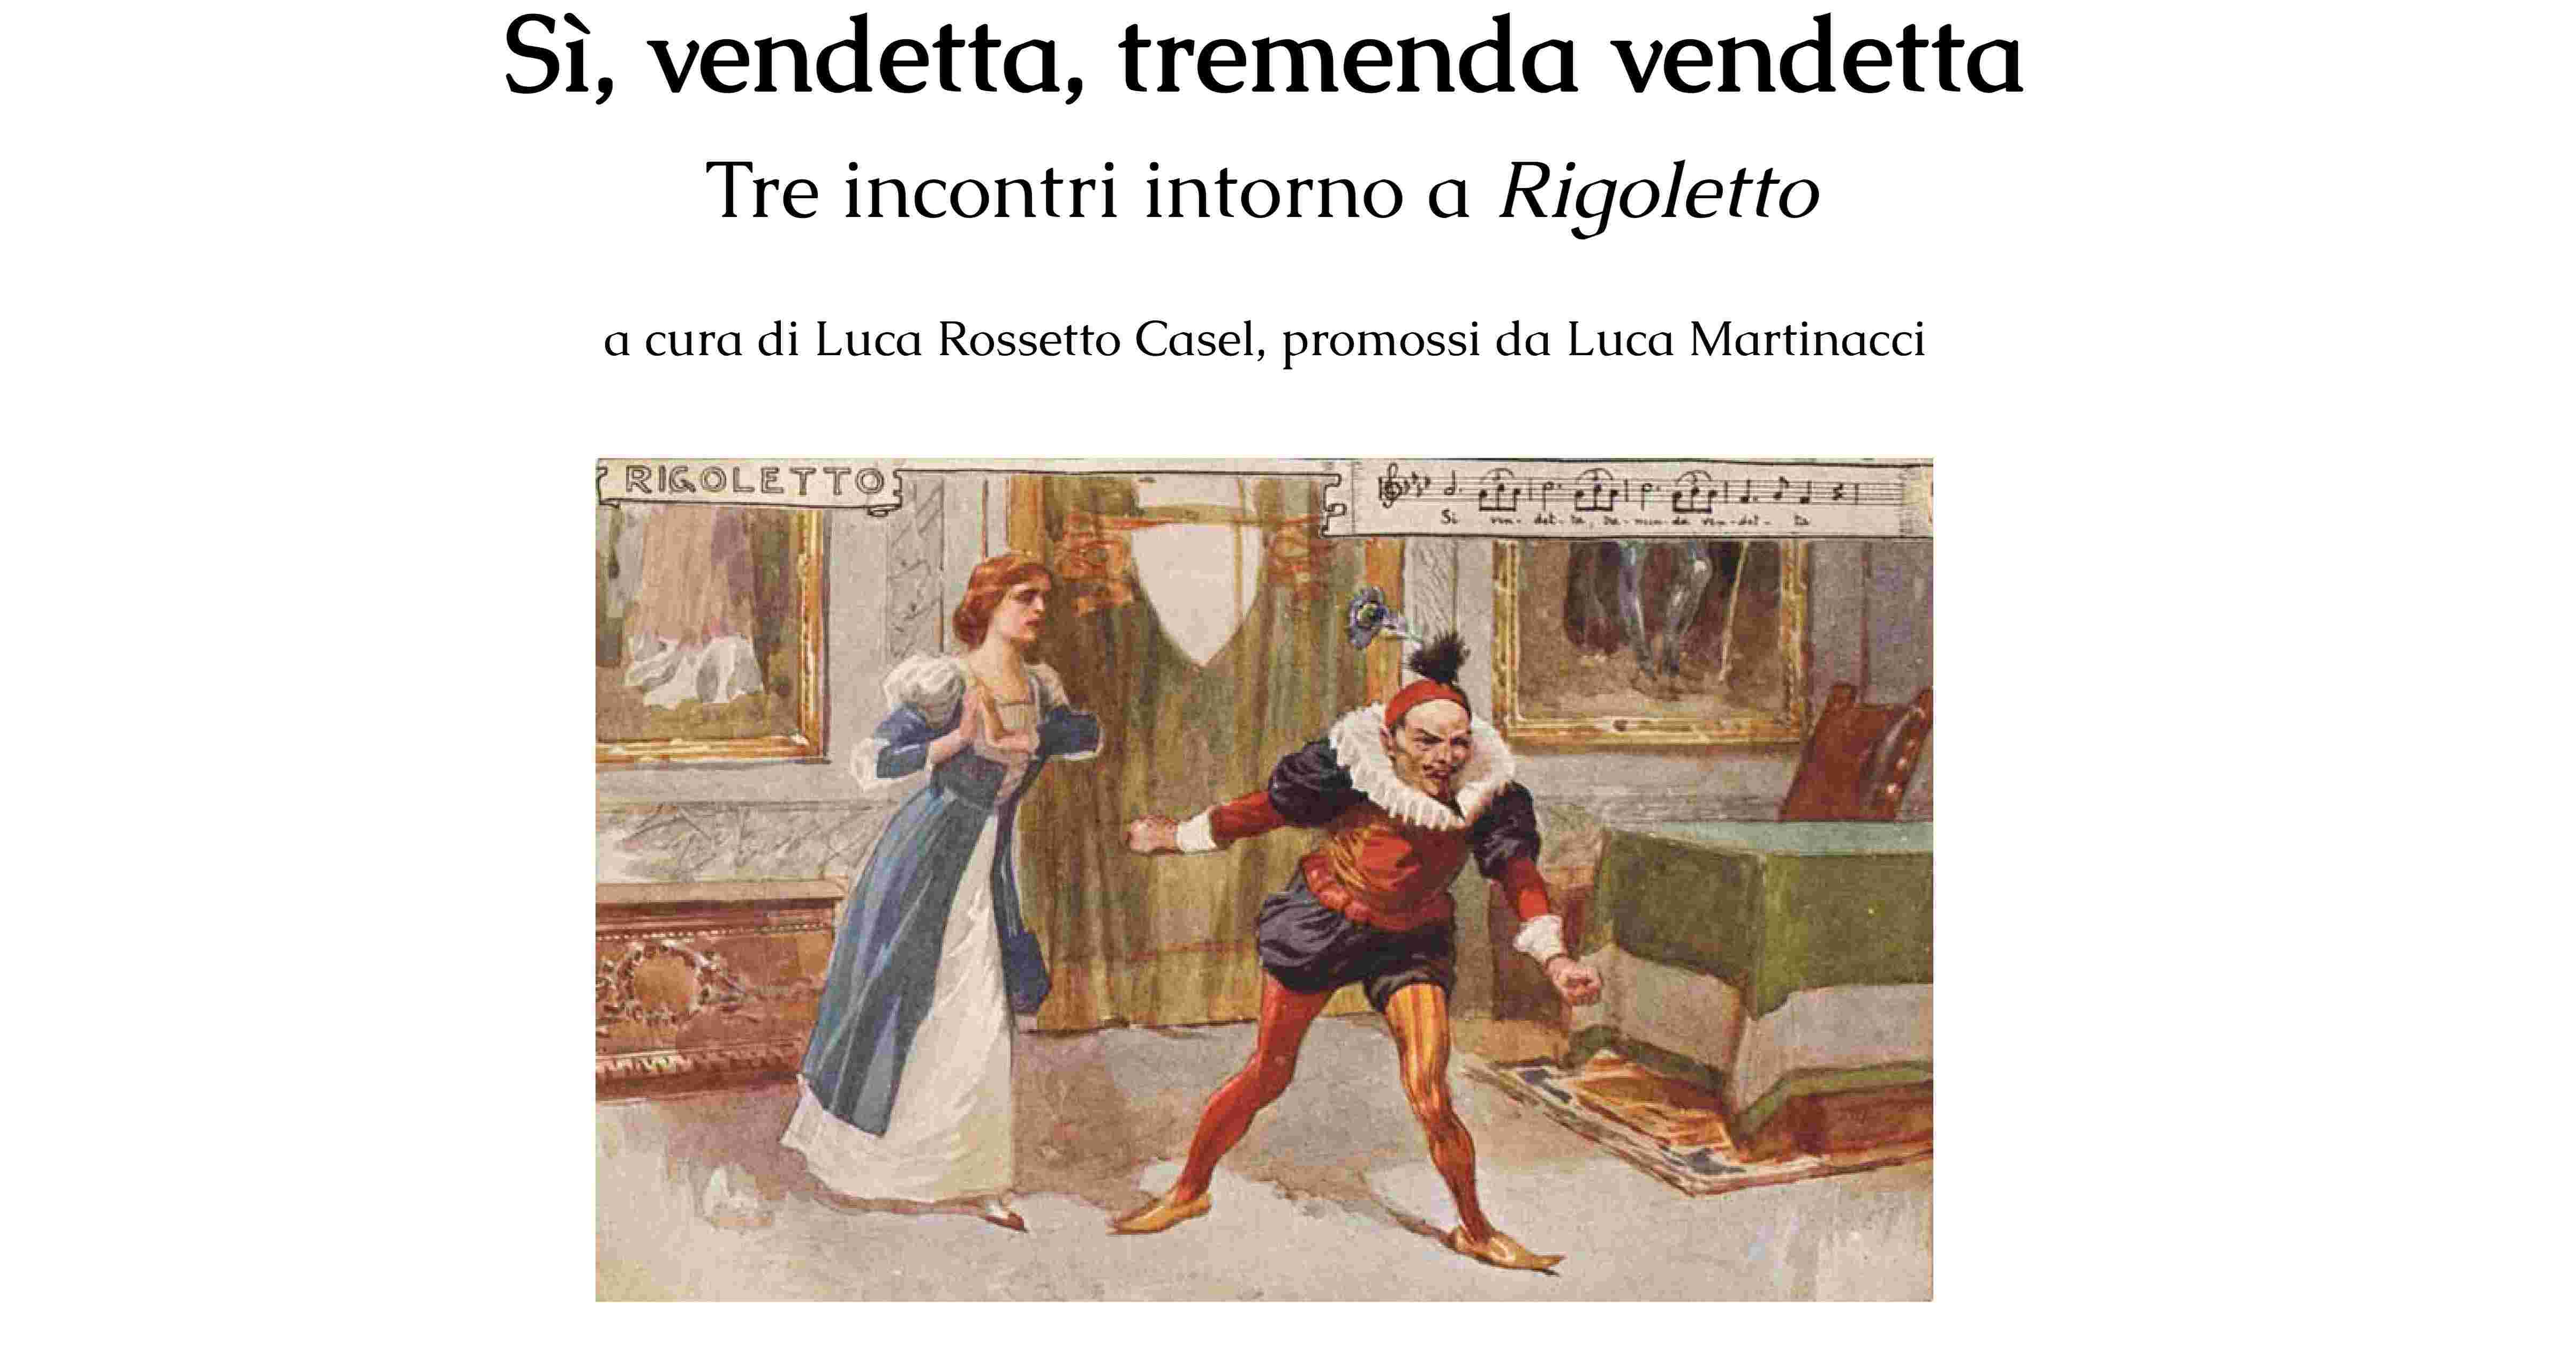 Rigoletto, l'opera di Giuseppe Verdi Illustrata in tre incontri a cura dell'assessorato alla cultura